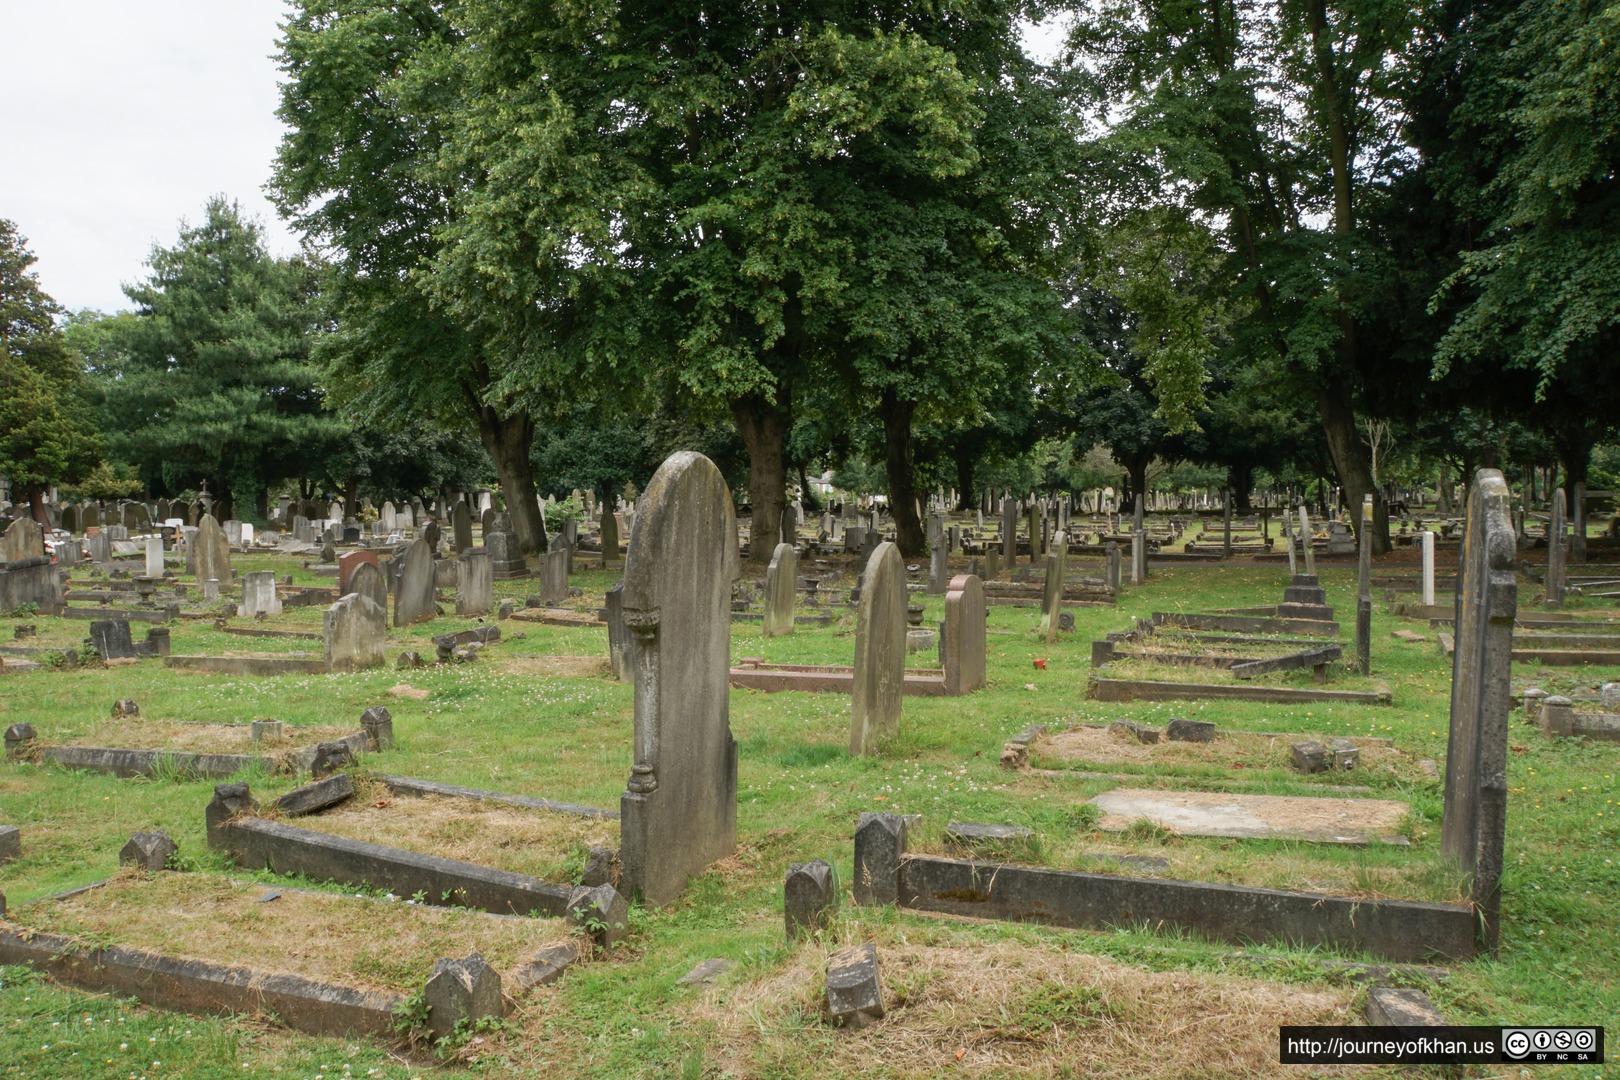 Graves in Tottenham Cemetery